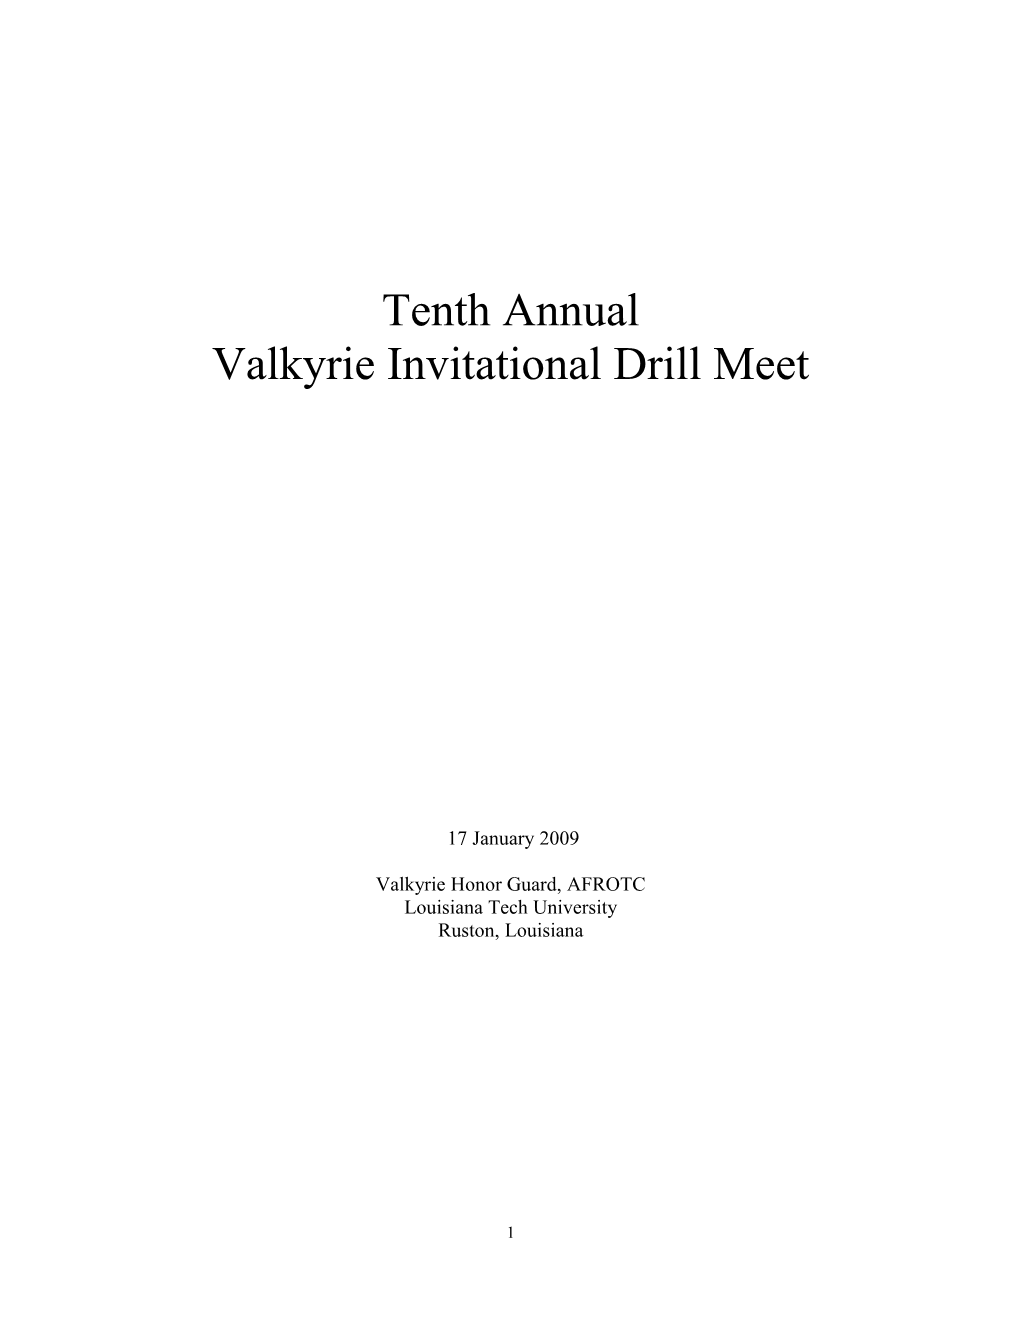 Valkyrie Invitational Drill Meet